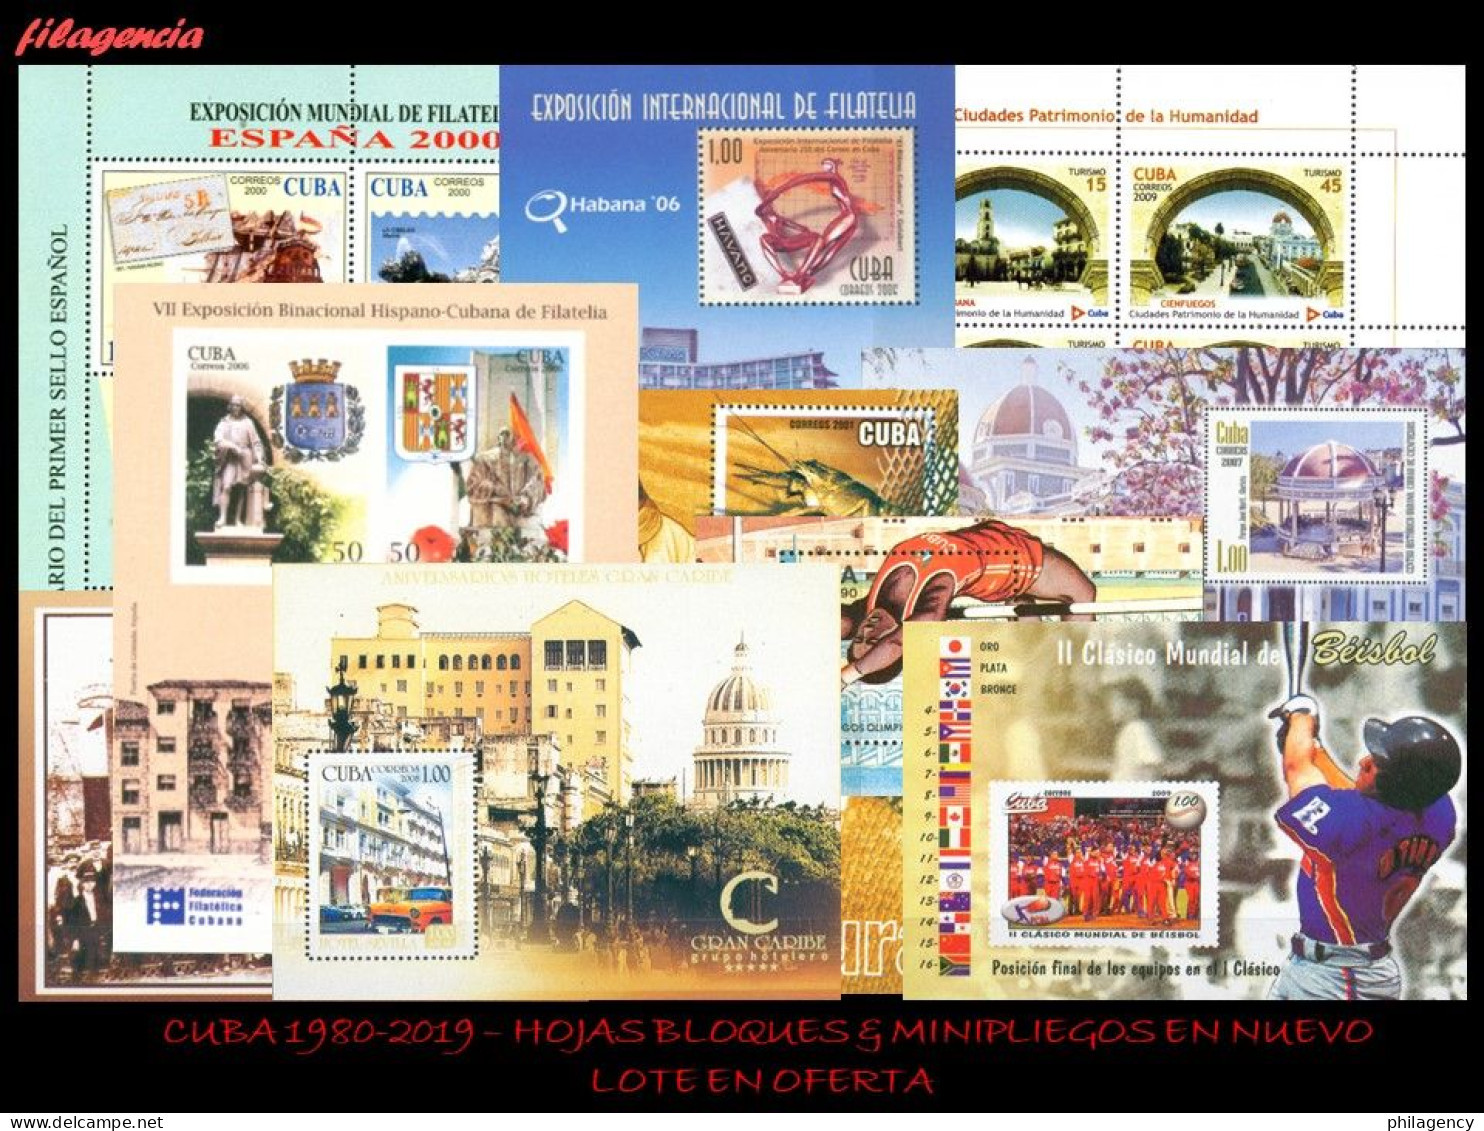 LOTES EN OFERTA. CUBA MINT. 1980-2019 LOTE DE 100 HOJAS BLOQUES & MINIPLIEGOS DIFERENTES MNH